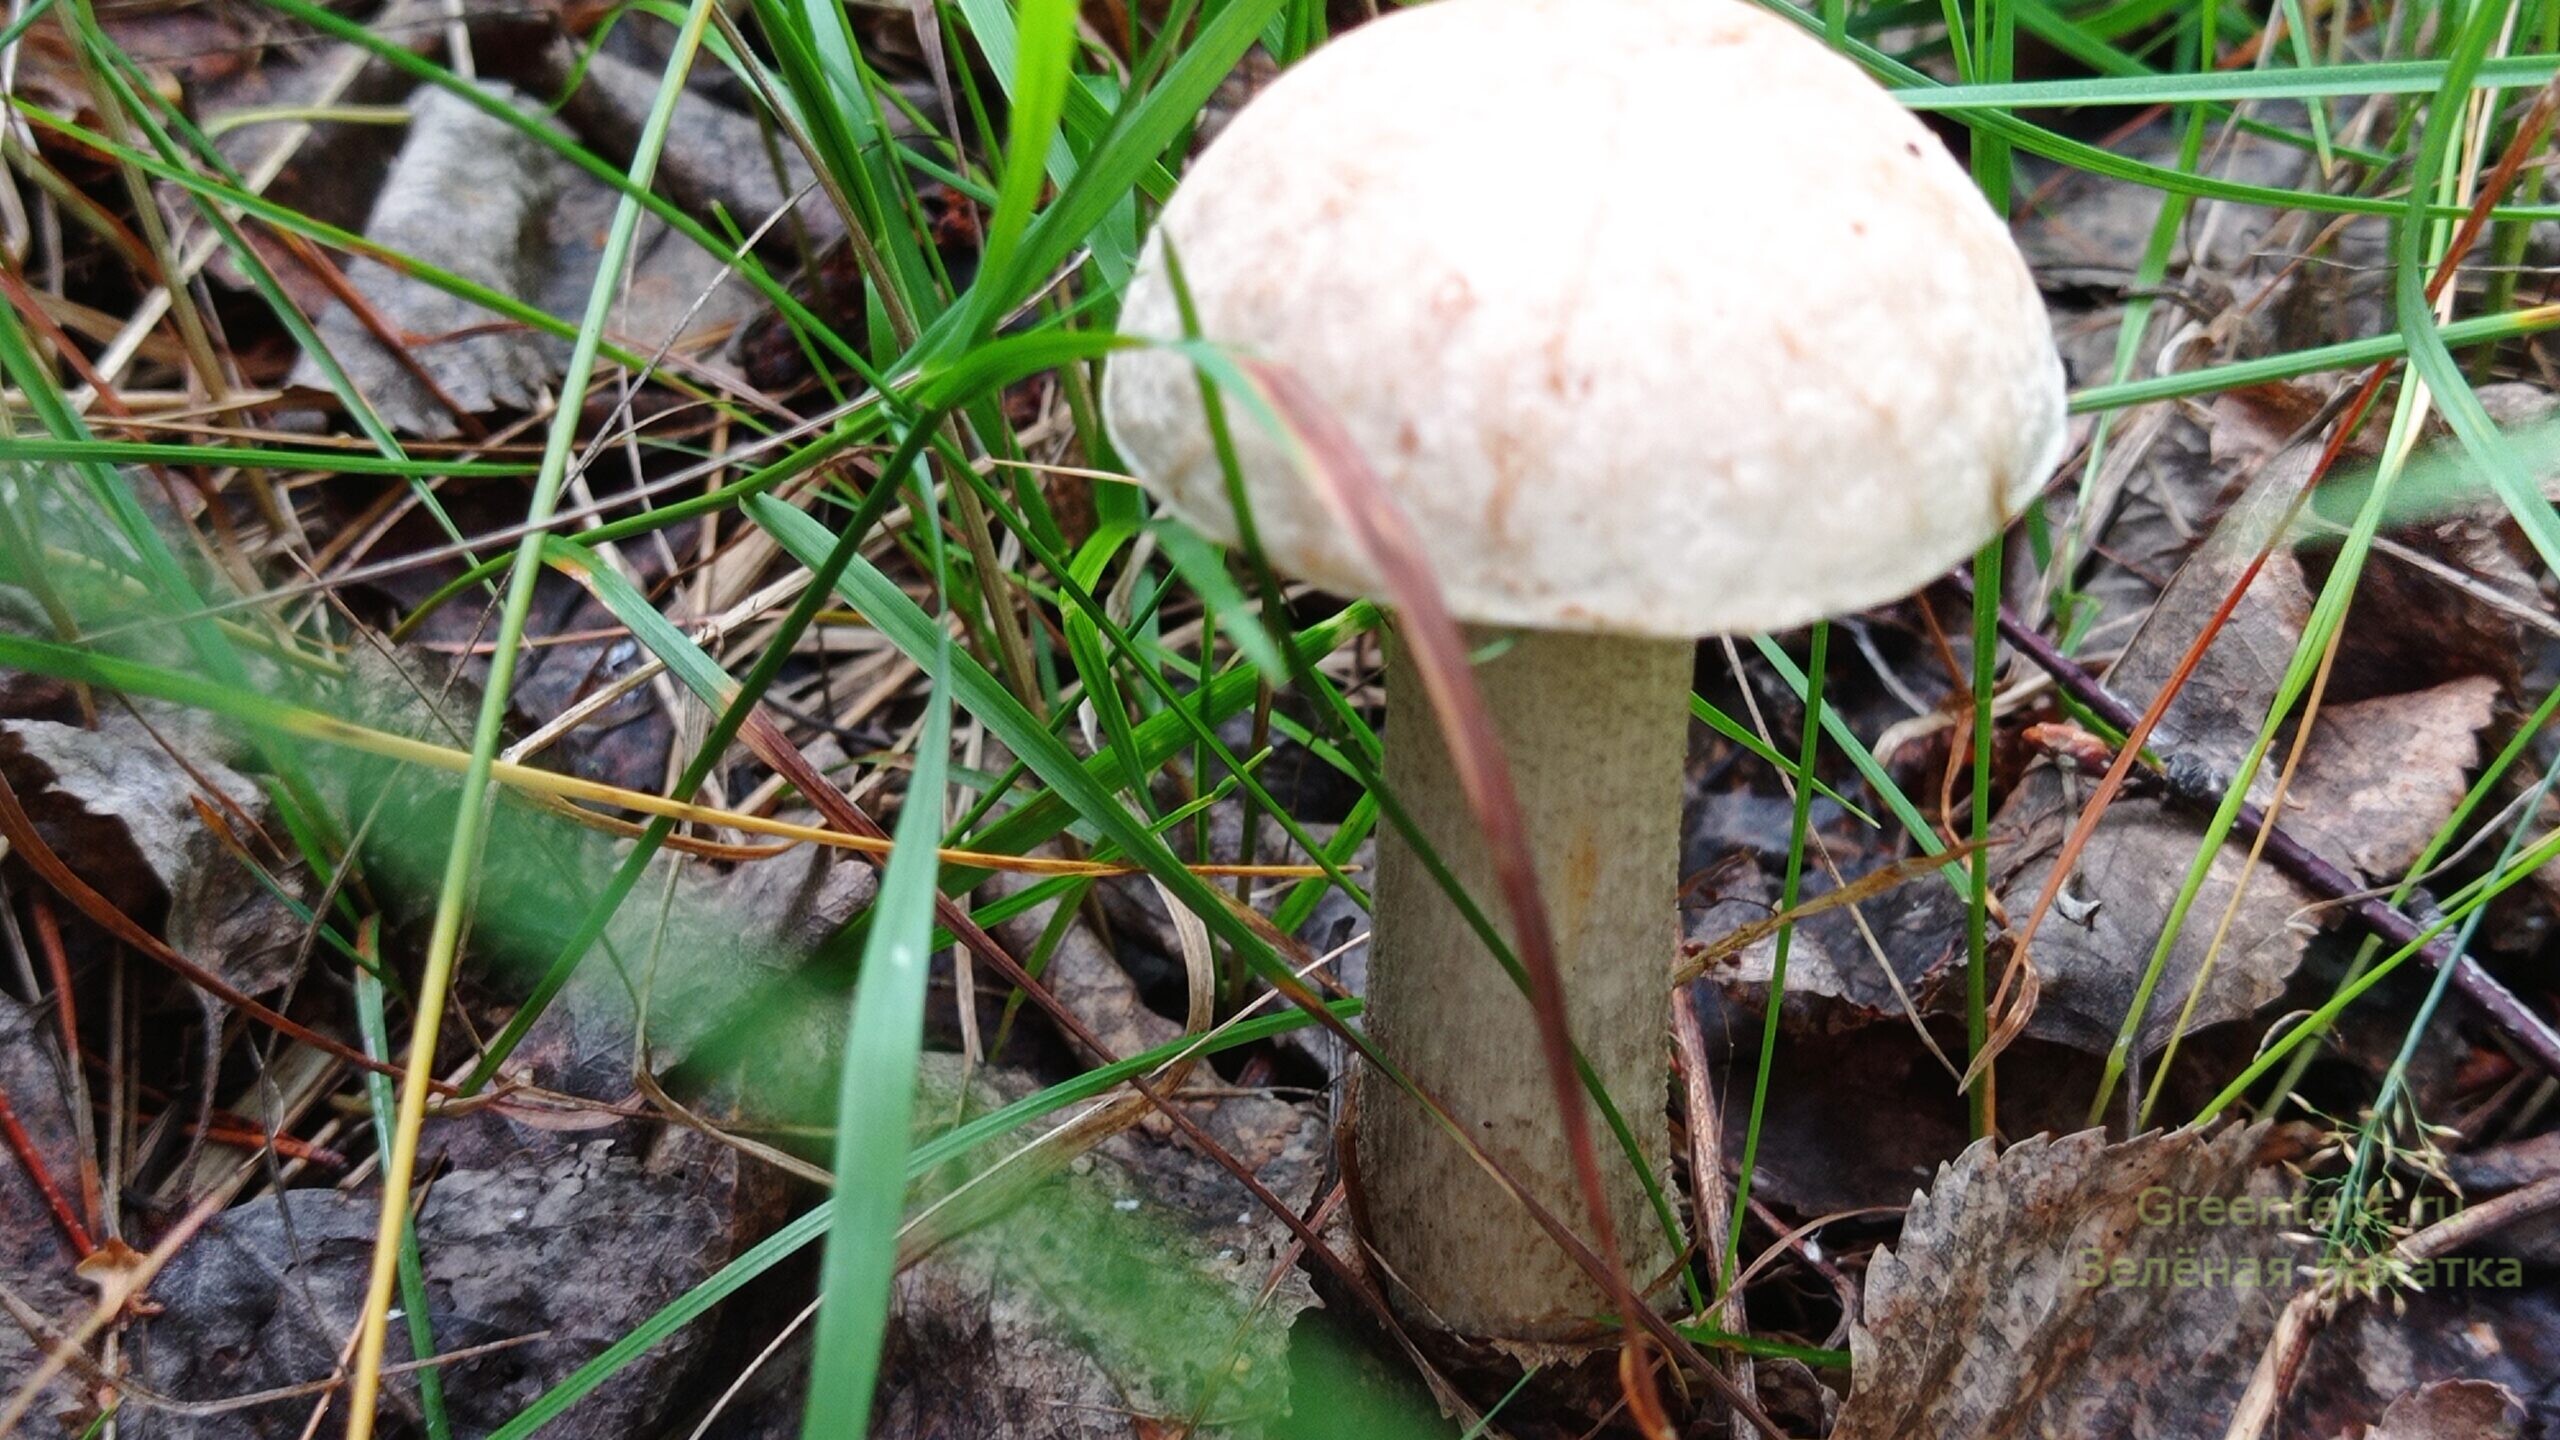 собирать грибы тихая охота грибные места лес природа отдых красавец